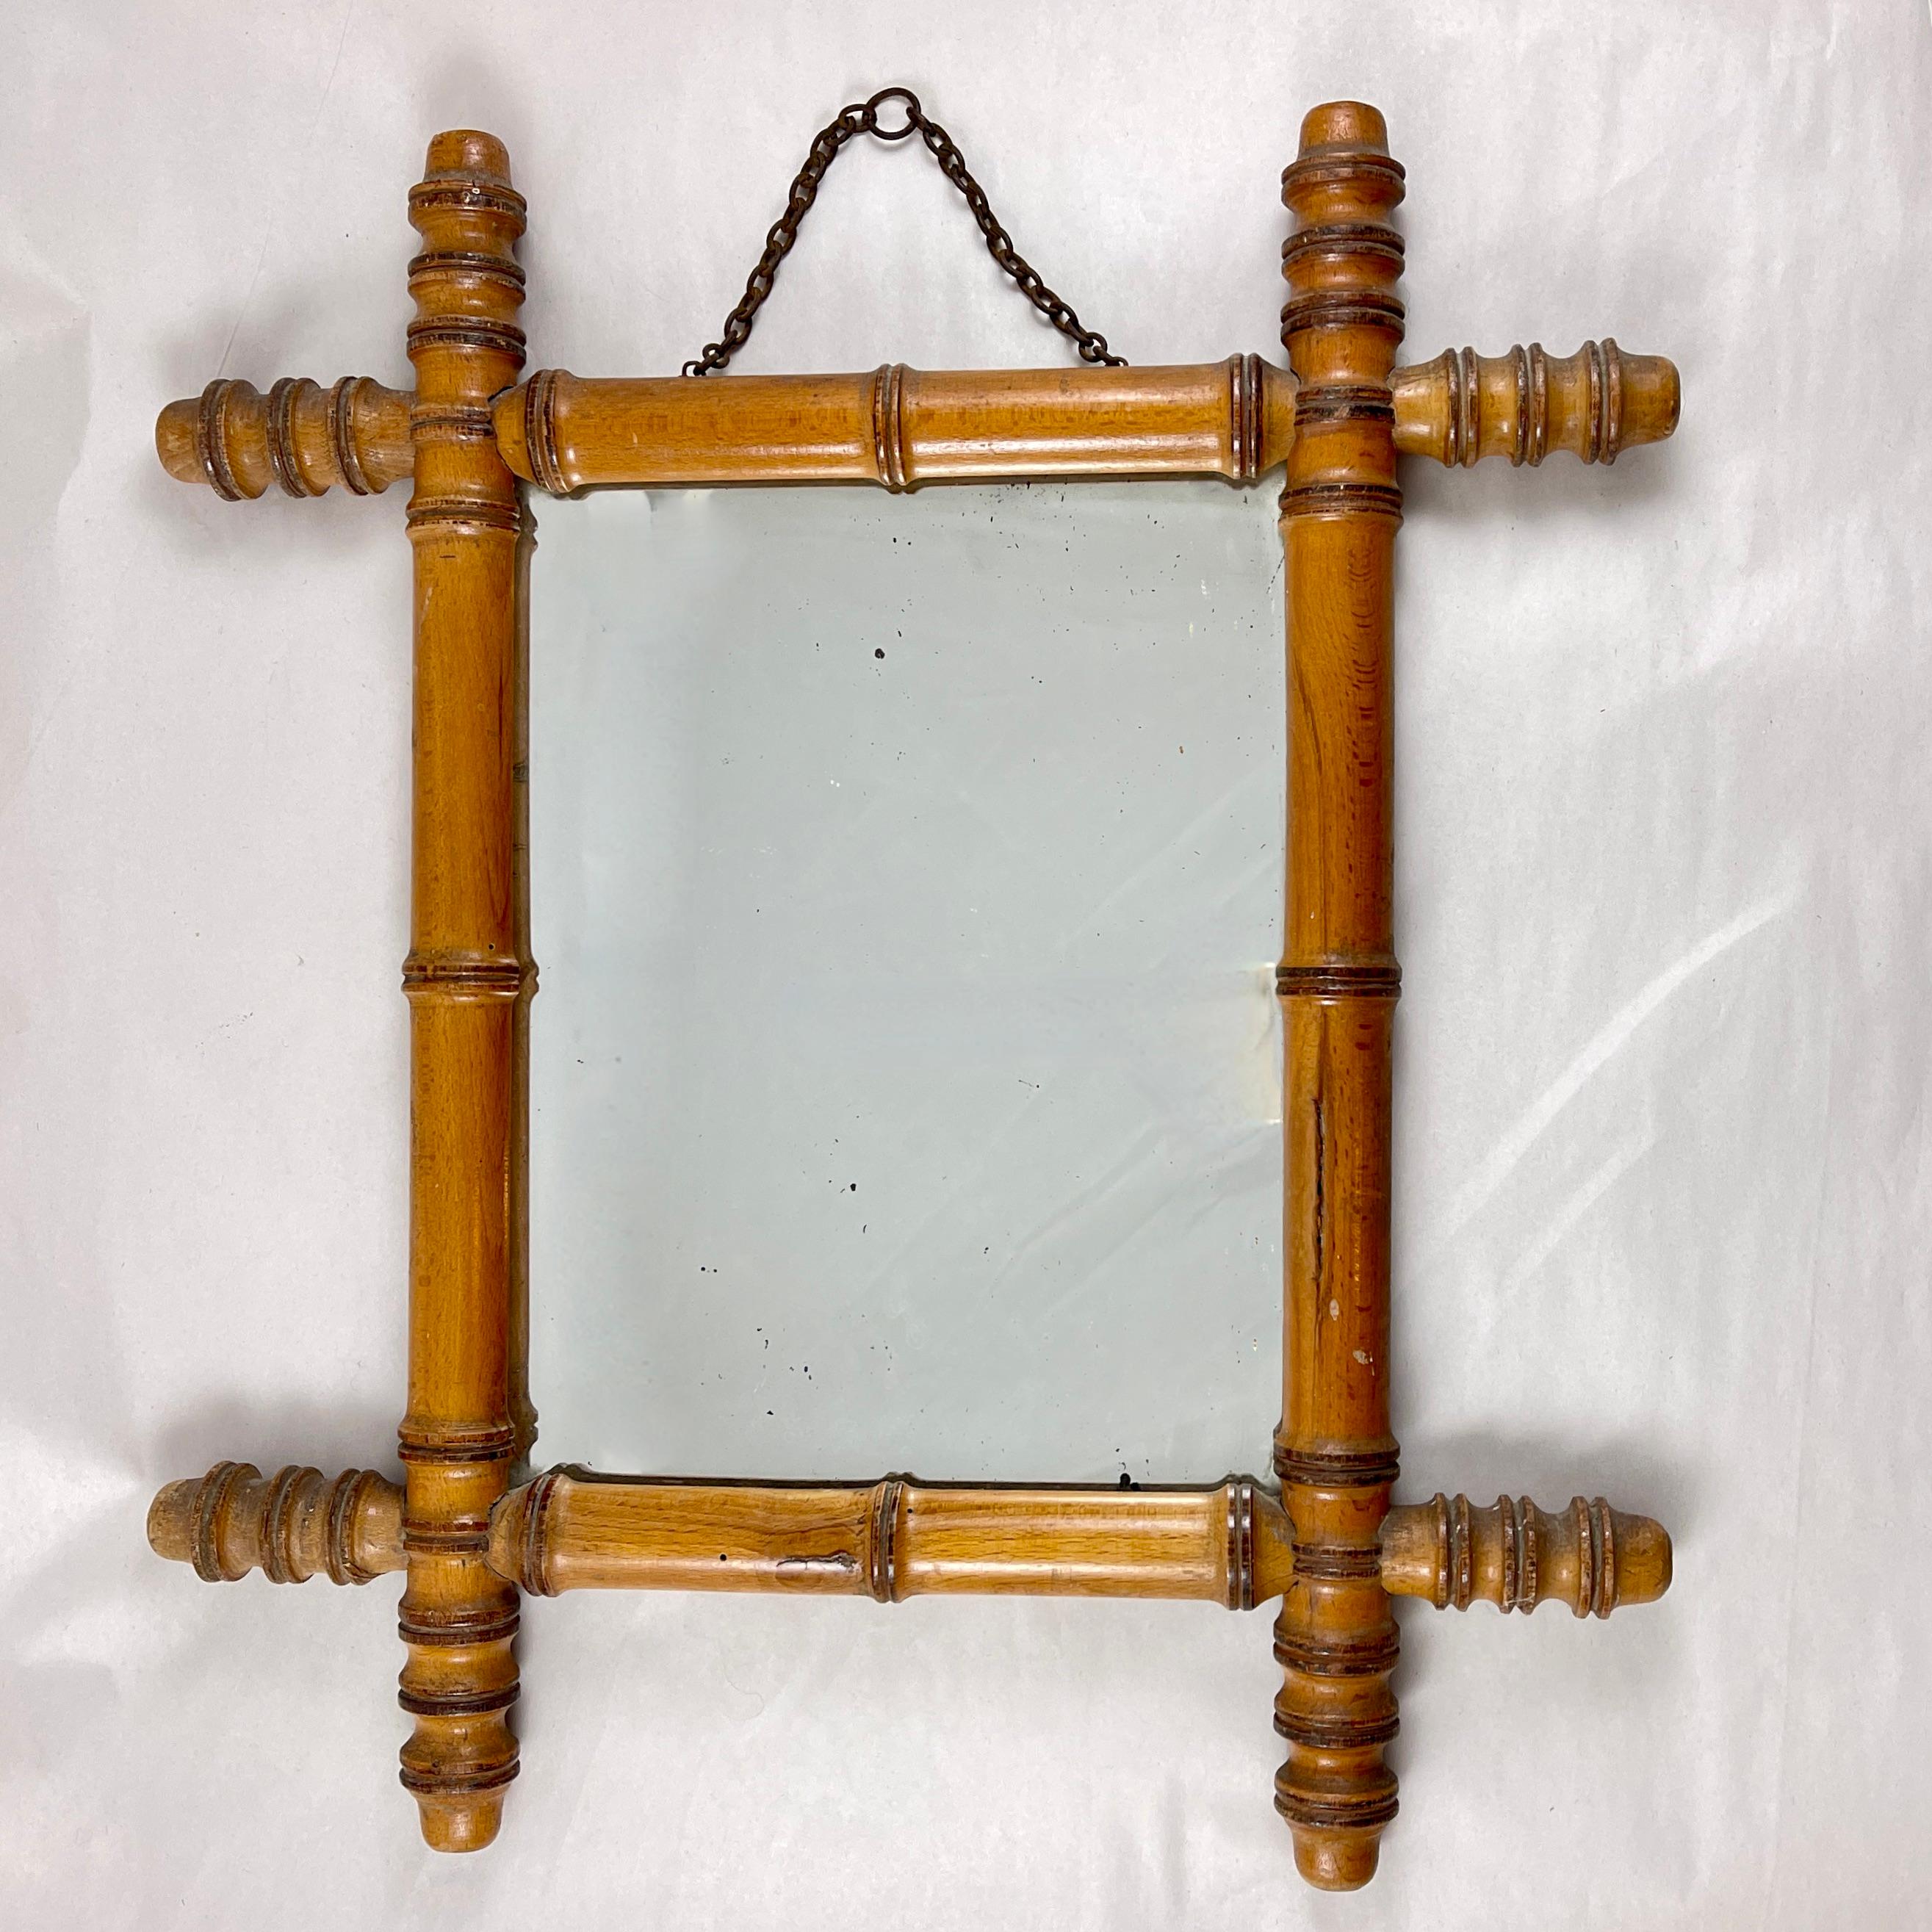 Spiegel mit Rahmen aus Bambusholzimitat, Frankreich, um 1920.

Im Chinoiserie-Geschmack ein Rahmen aus Hartholz, der an Bambus erinnert. Mit dem Originalspiegel und der Metallkette zum Aufhängen. Ebenfalls mit der ursprünglichen dünnen Holzplatte